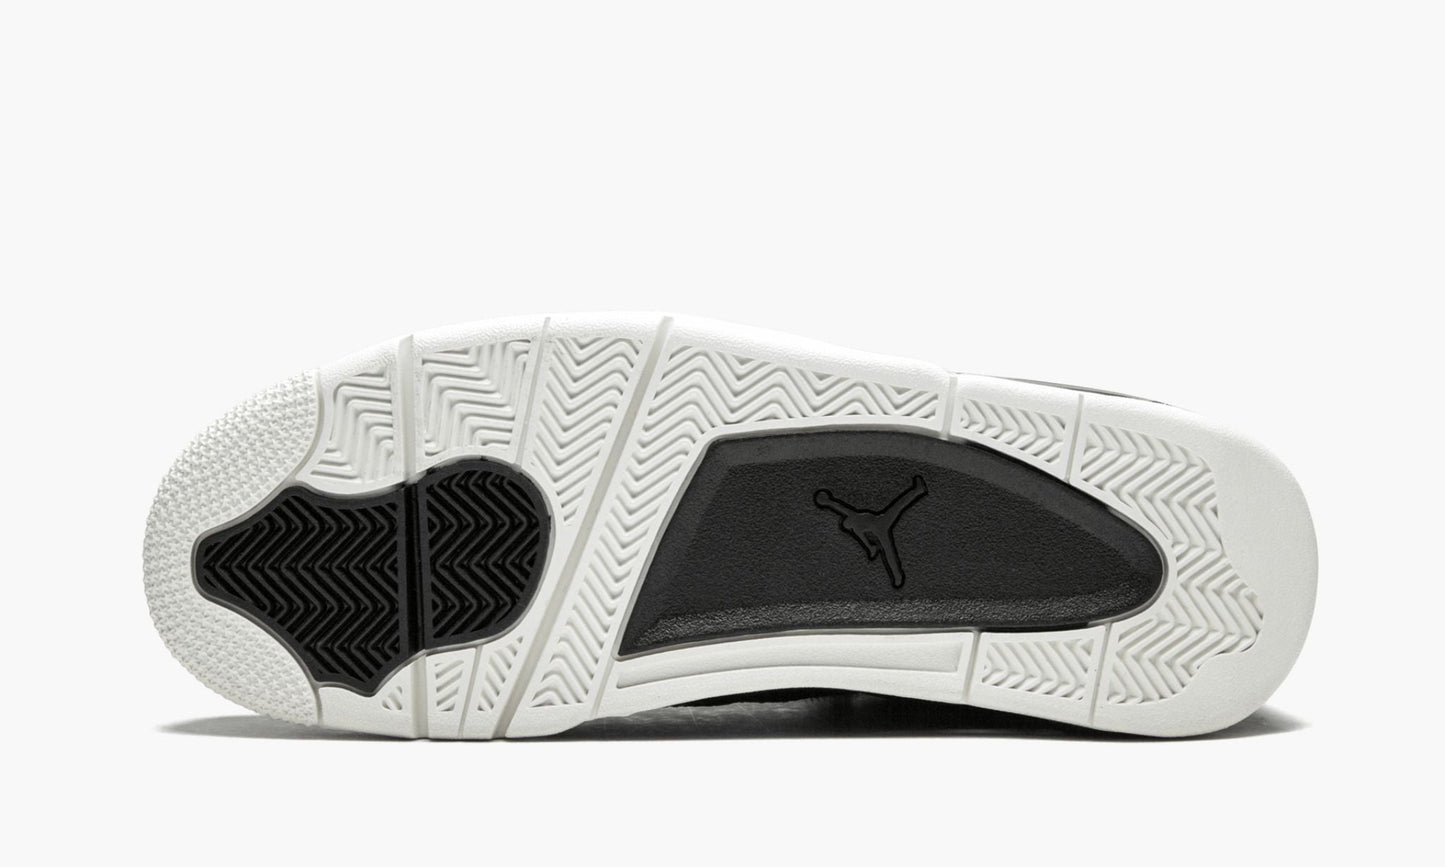 Air Jordan 4 Retro Premium "Pinnacle"